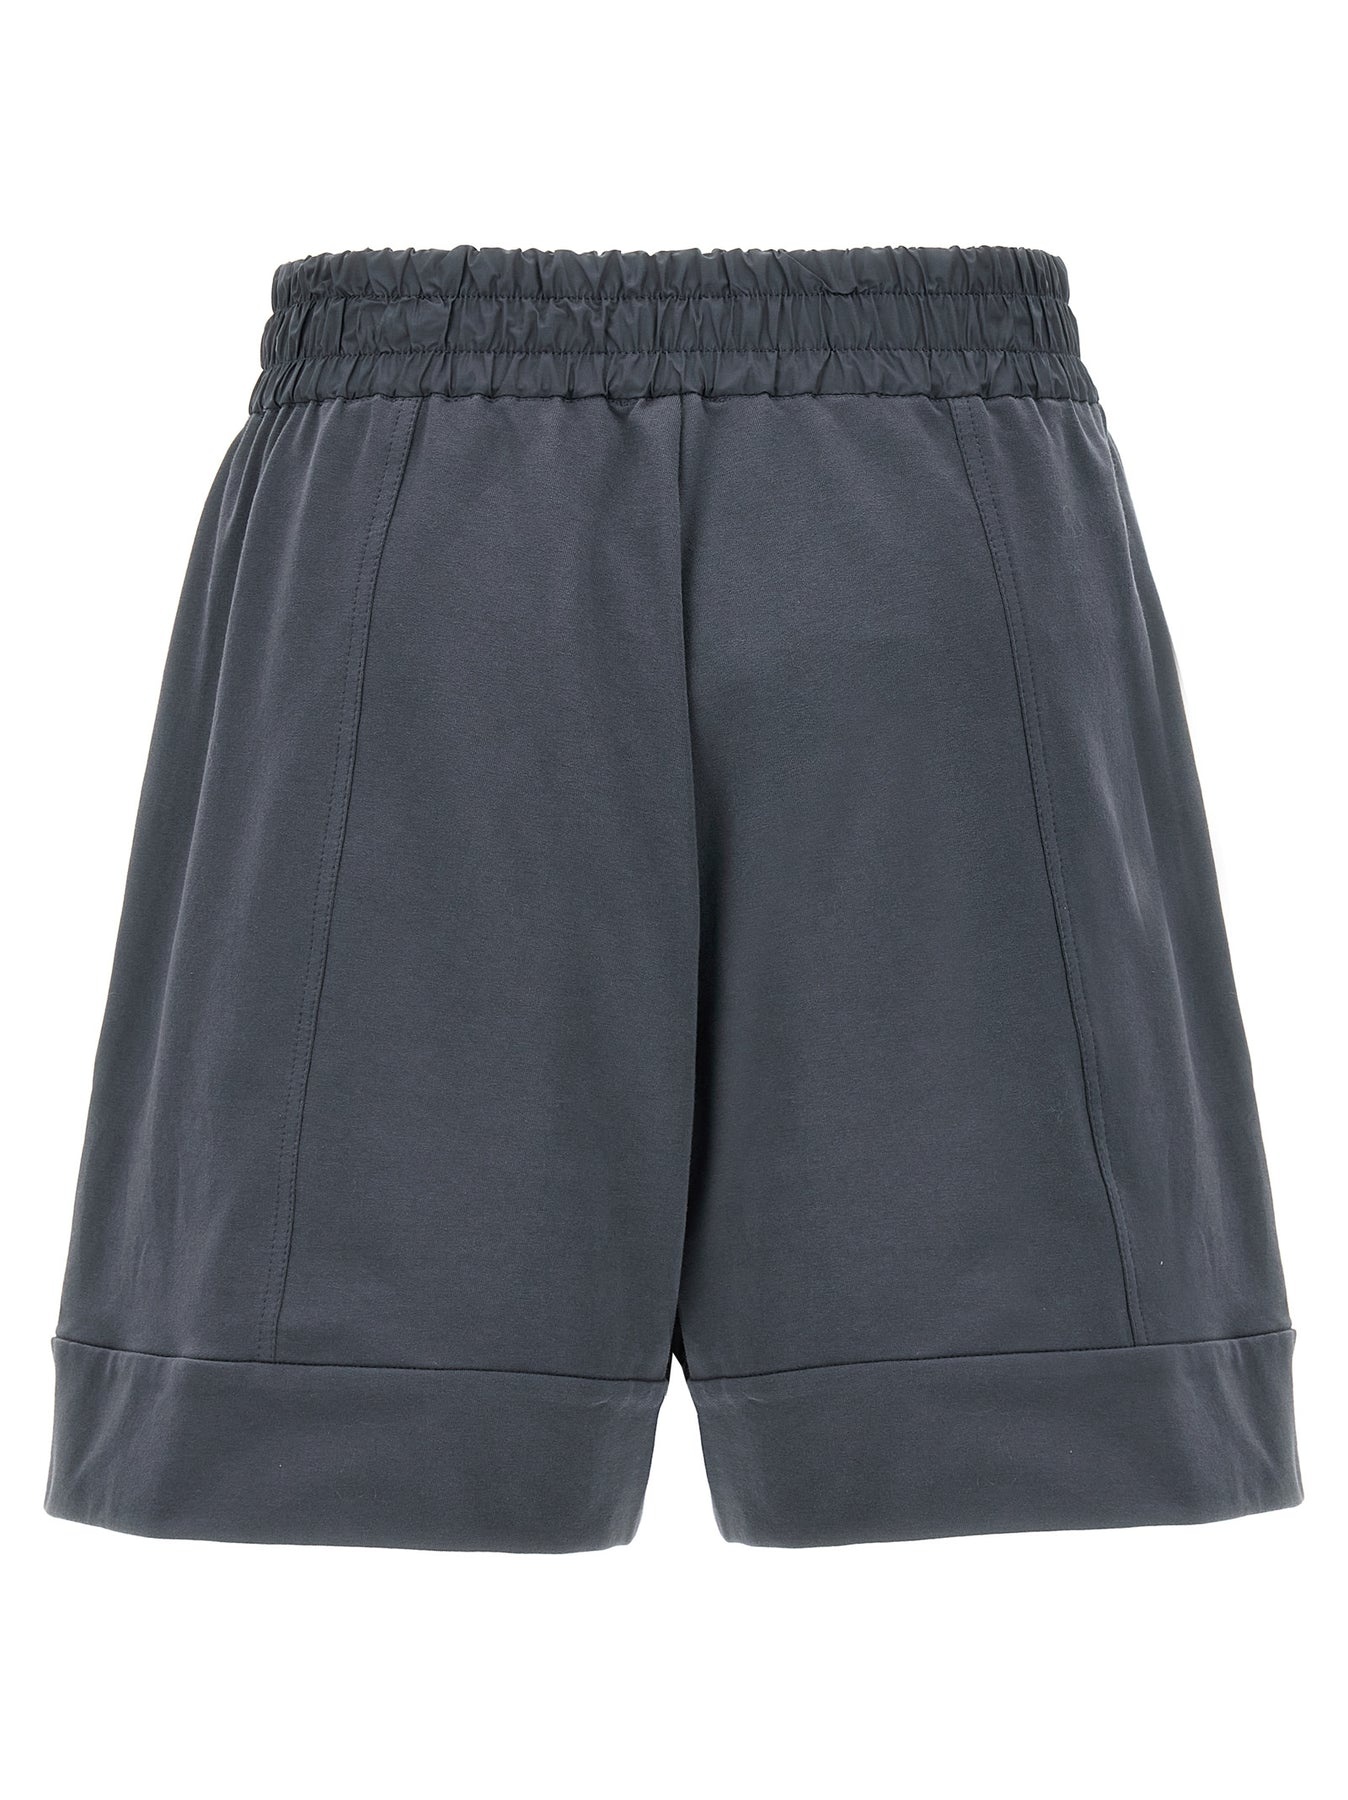 Monile Drawstring Shorts Bermuda, Short Gray - 2